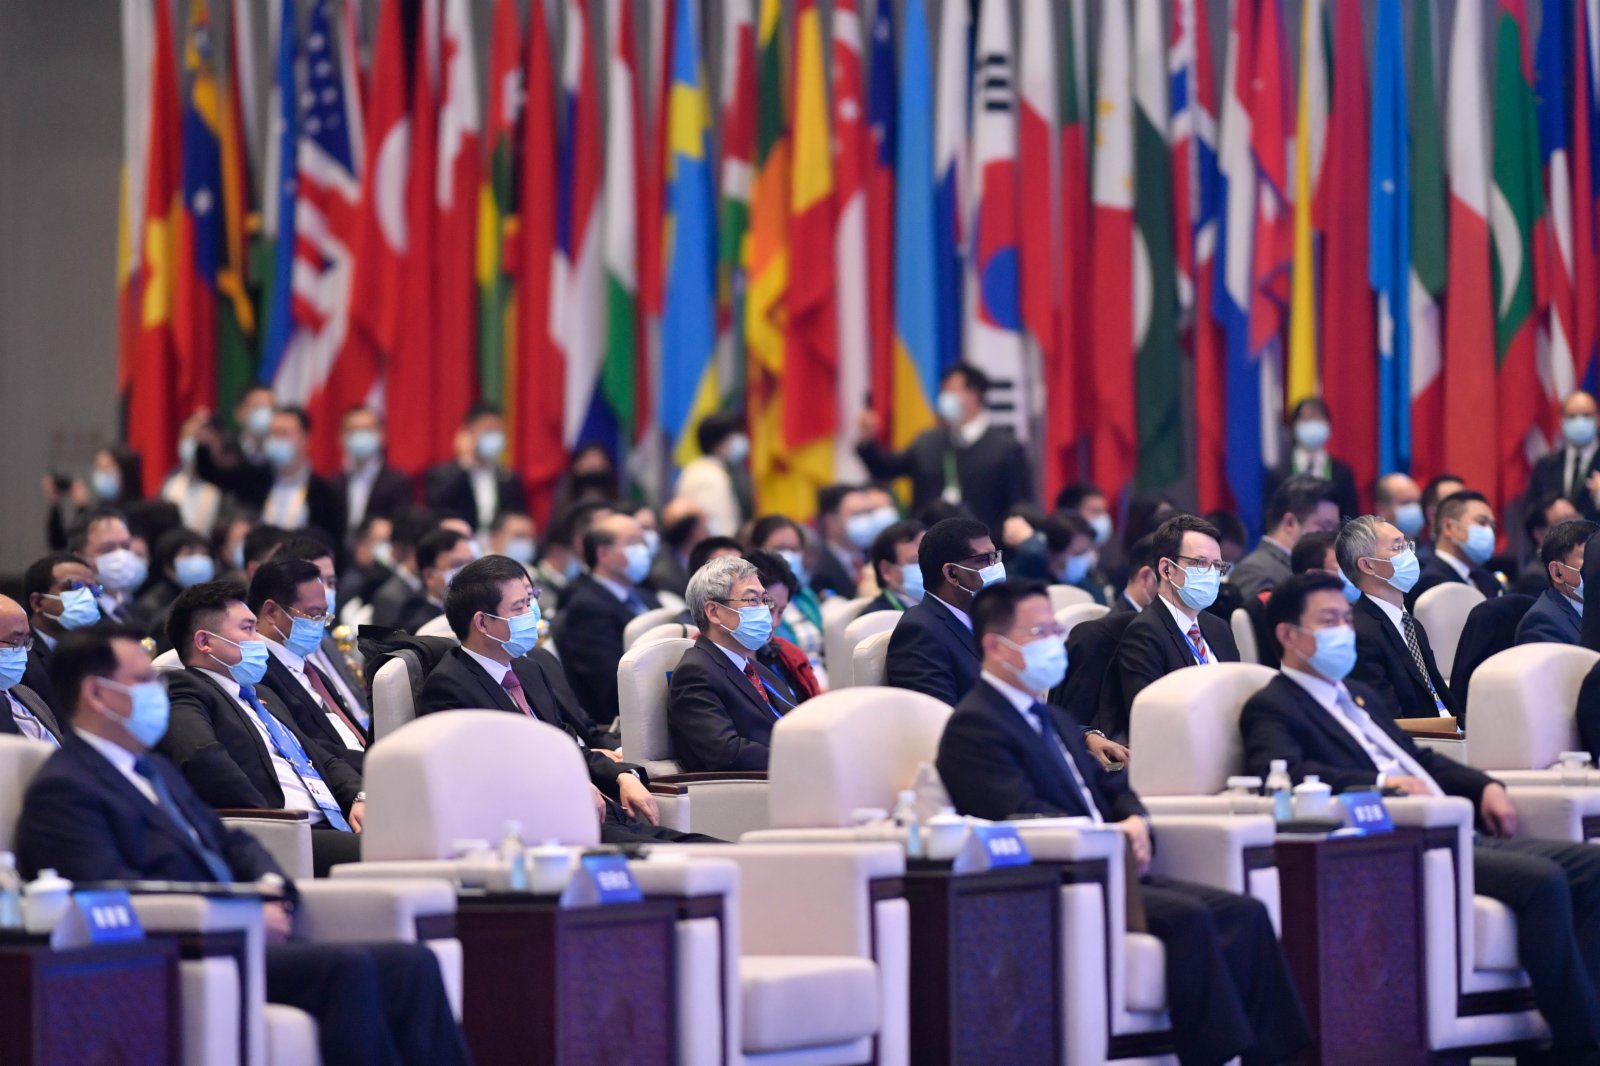  11月23日，世界互聯網大會·互聯網發展論壇在浙江烏鎮開幕。